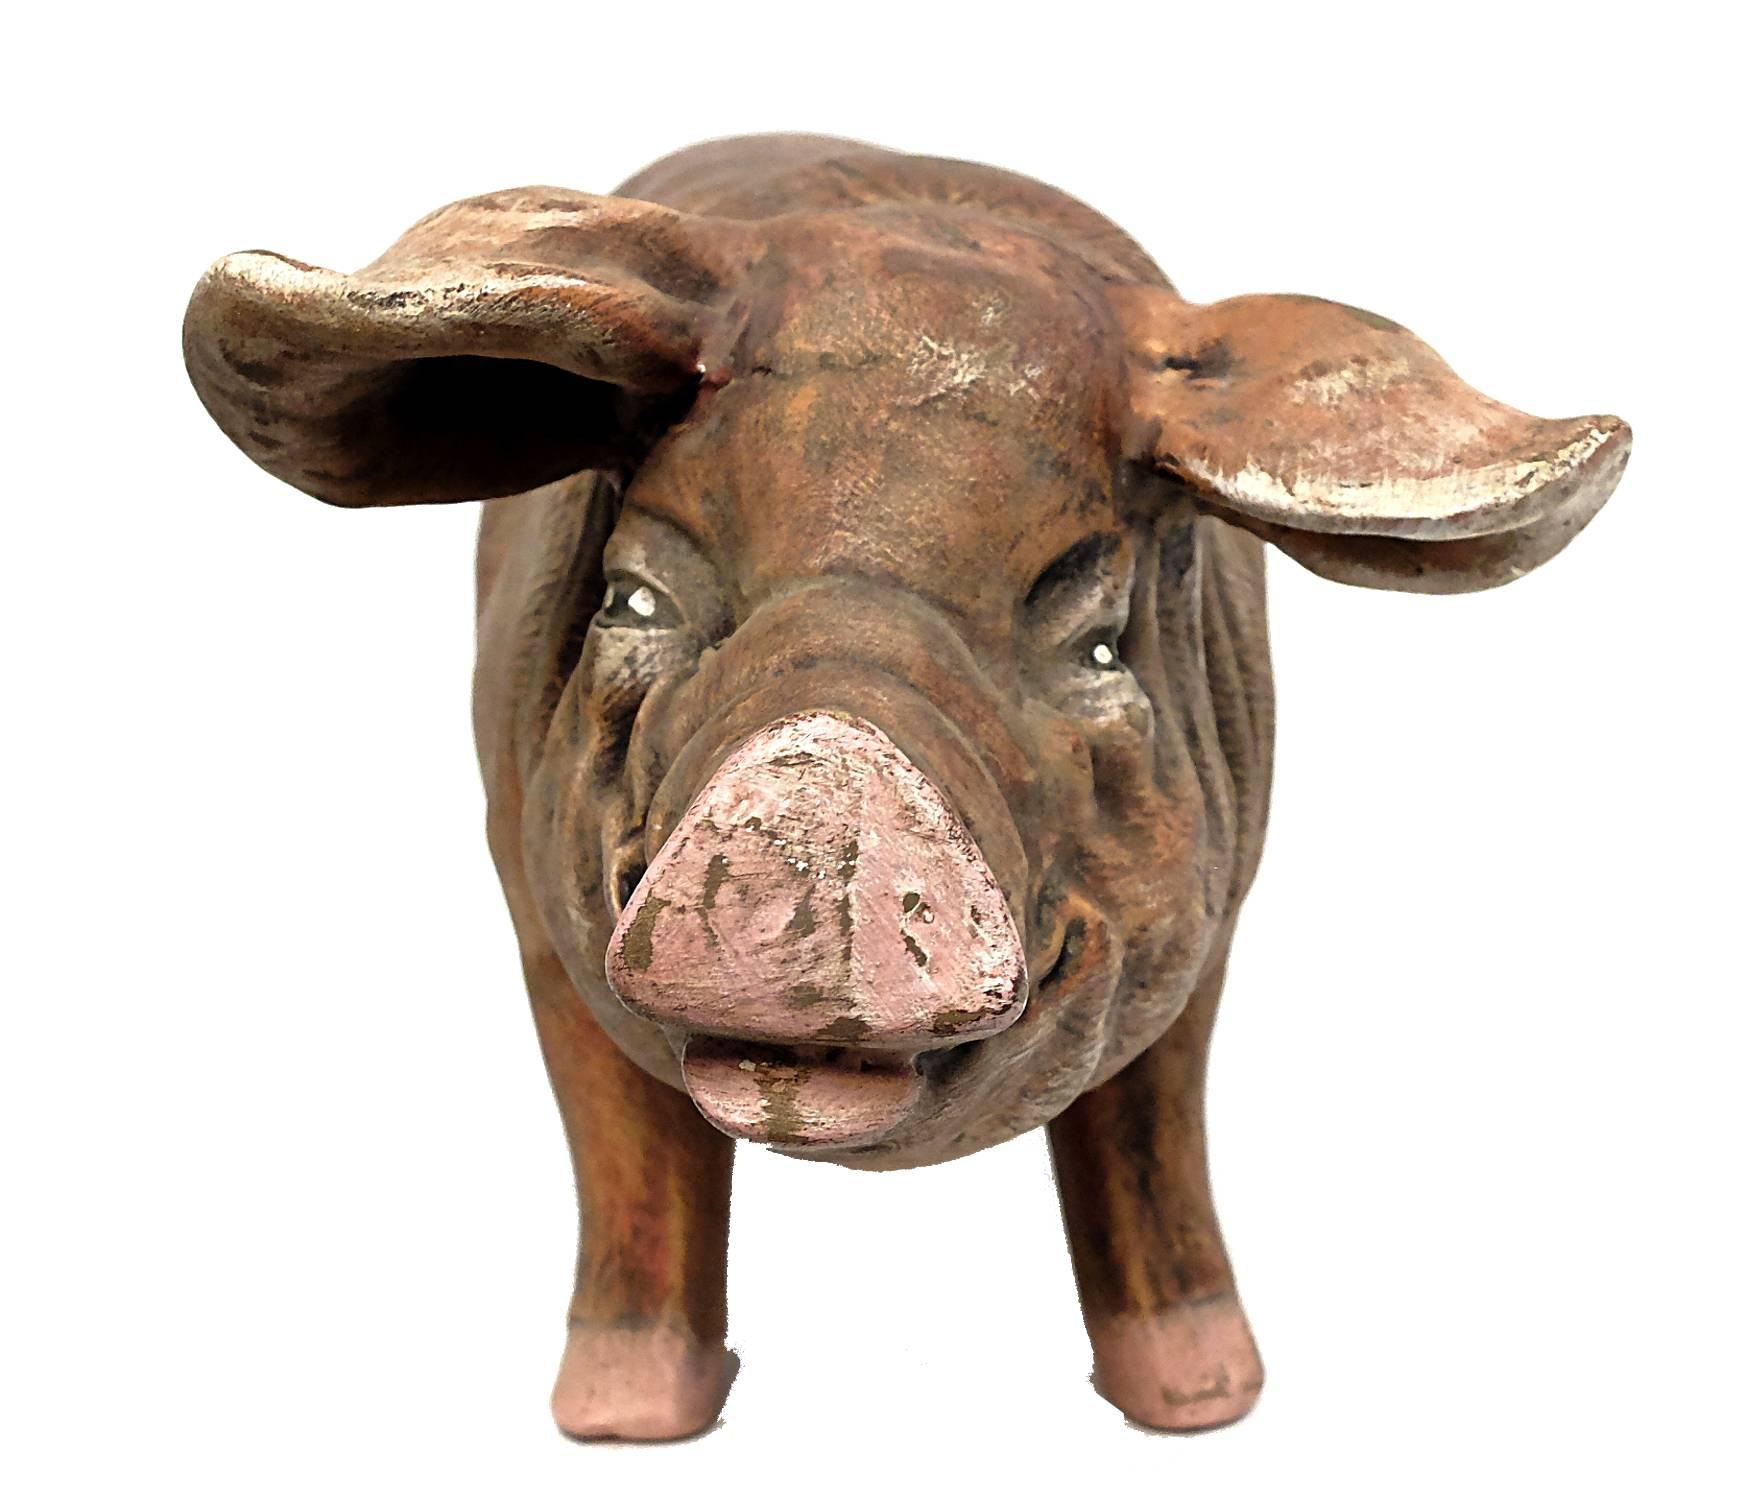 Italian Terracotta Sculpture Depicting a Pig 1